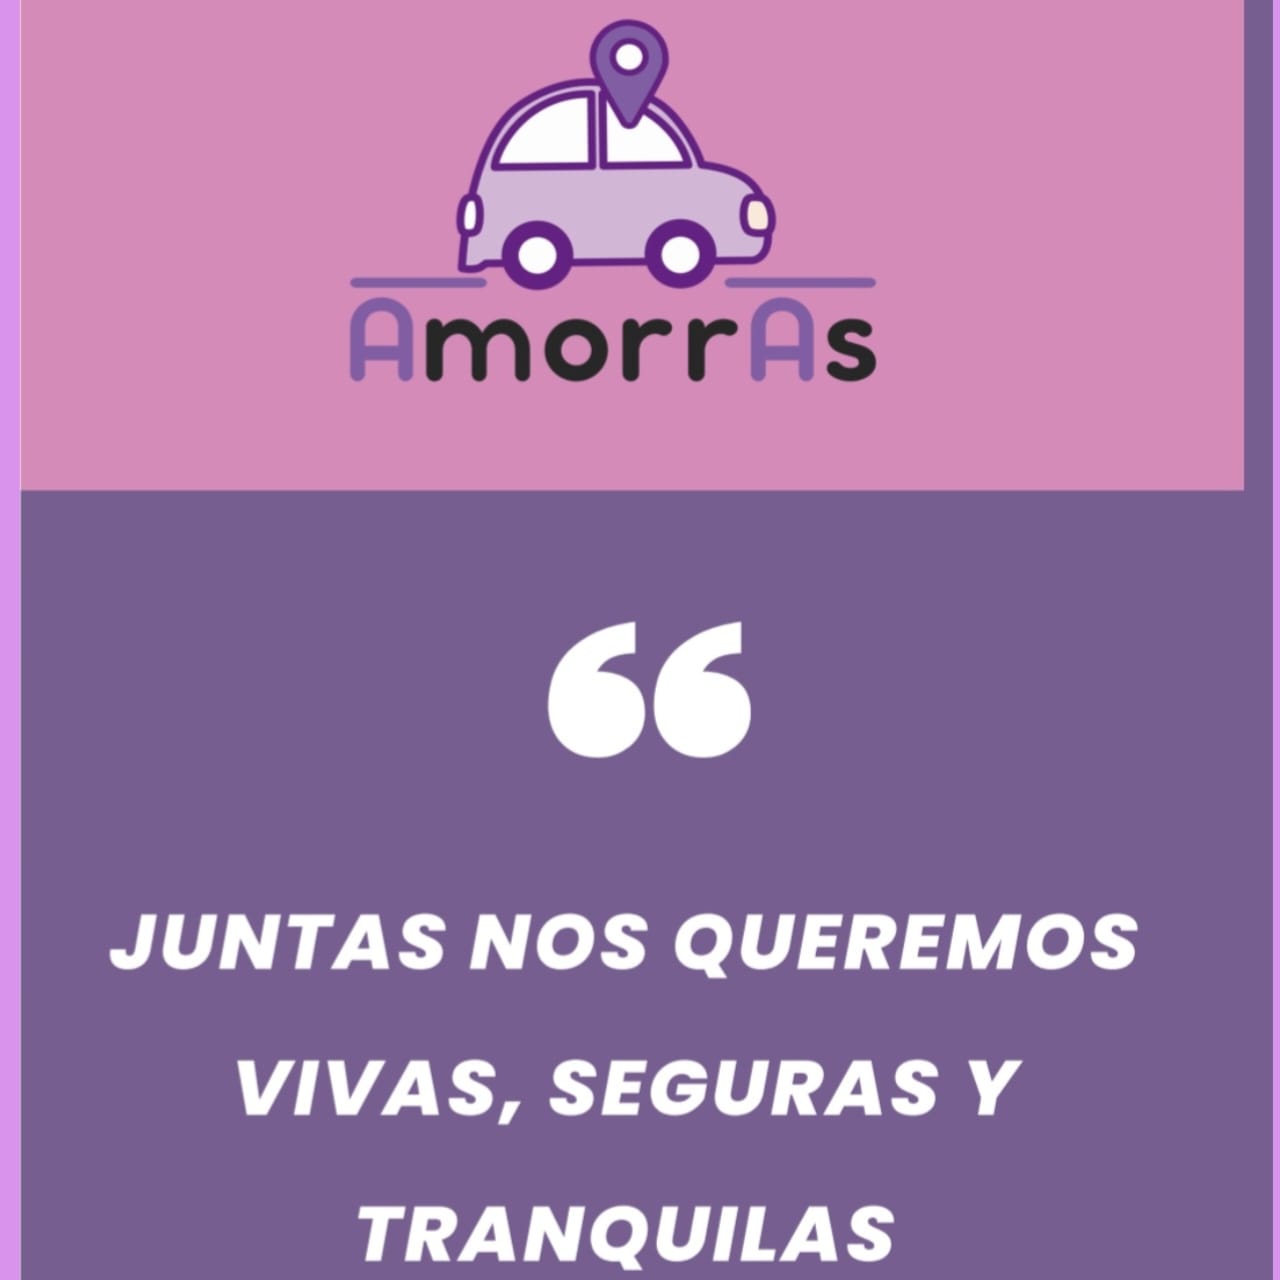 Taxis para Mujeres Amorras